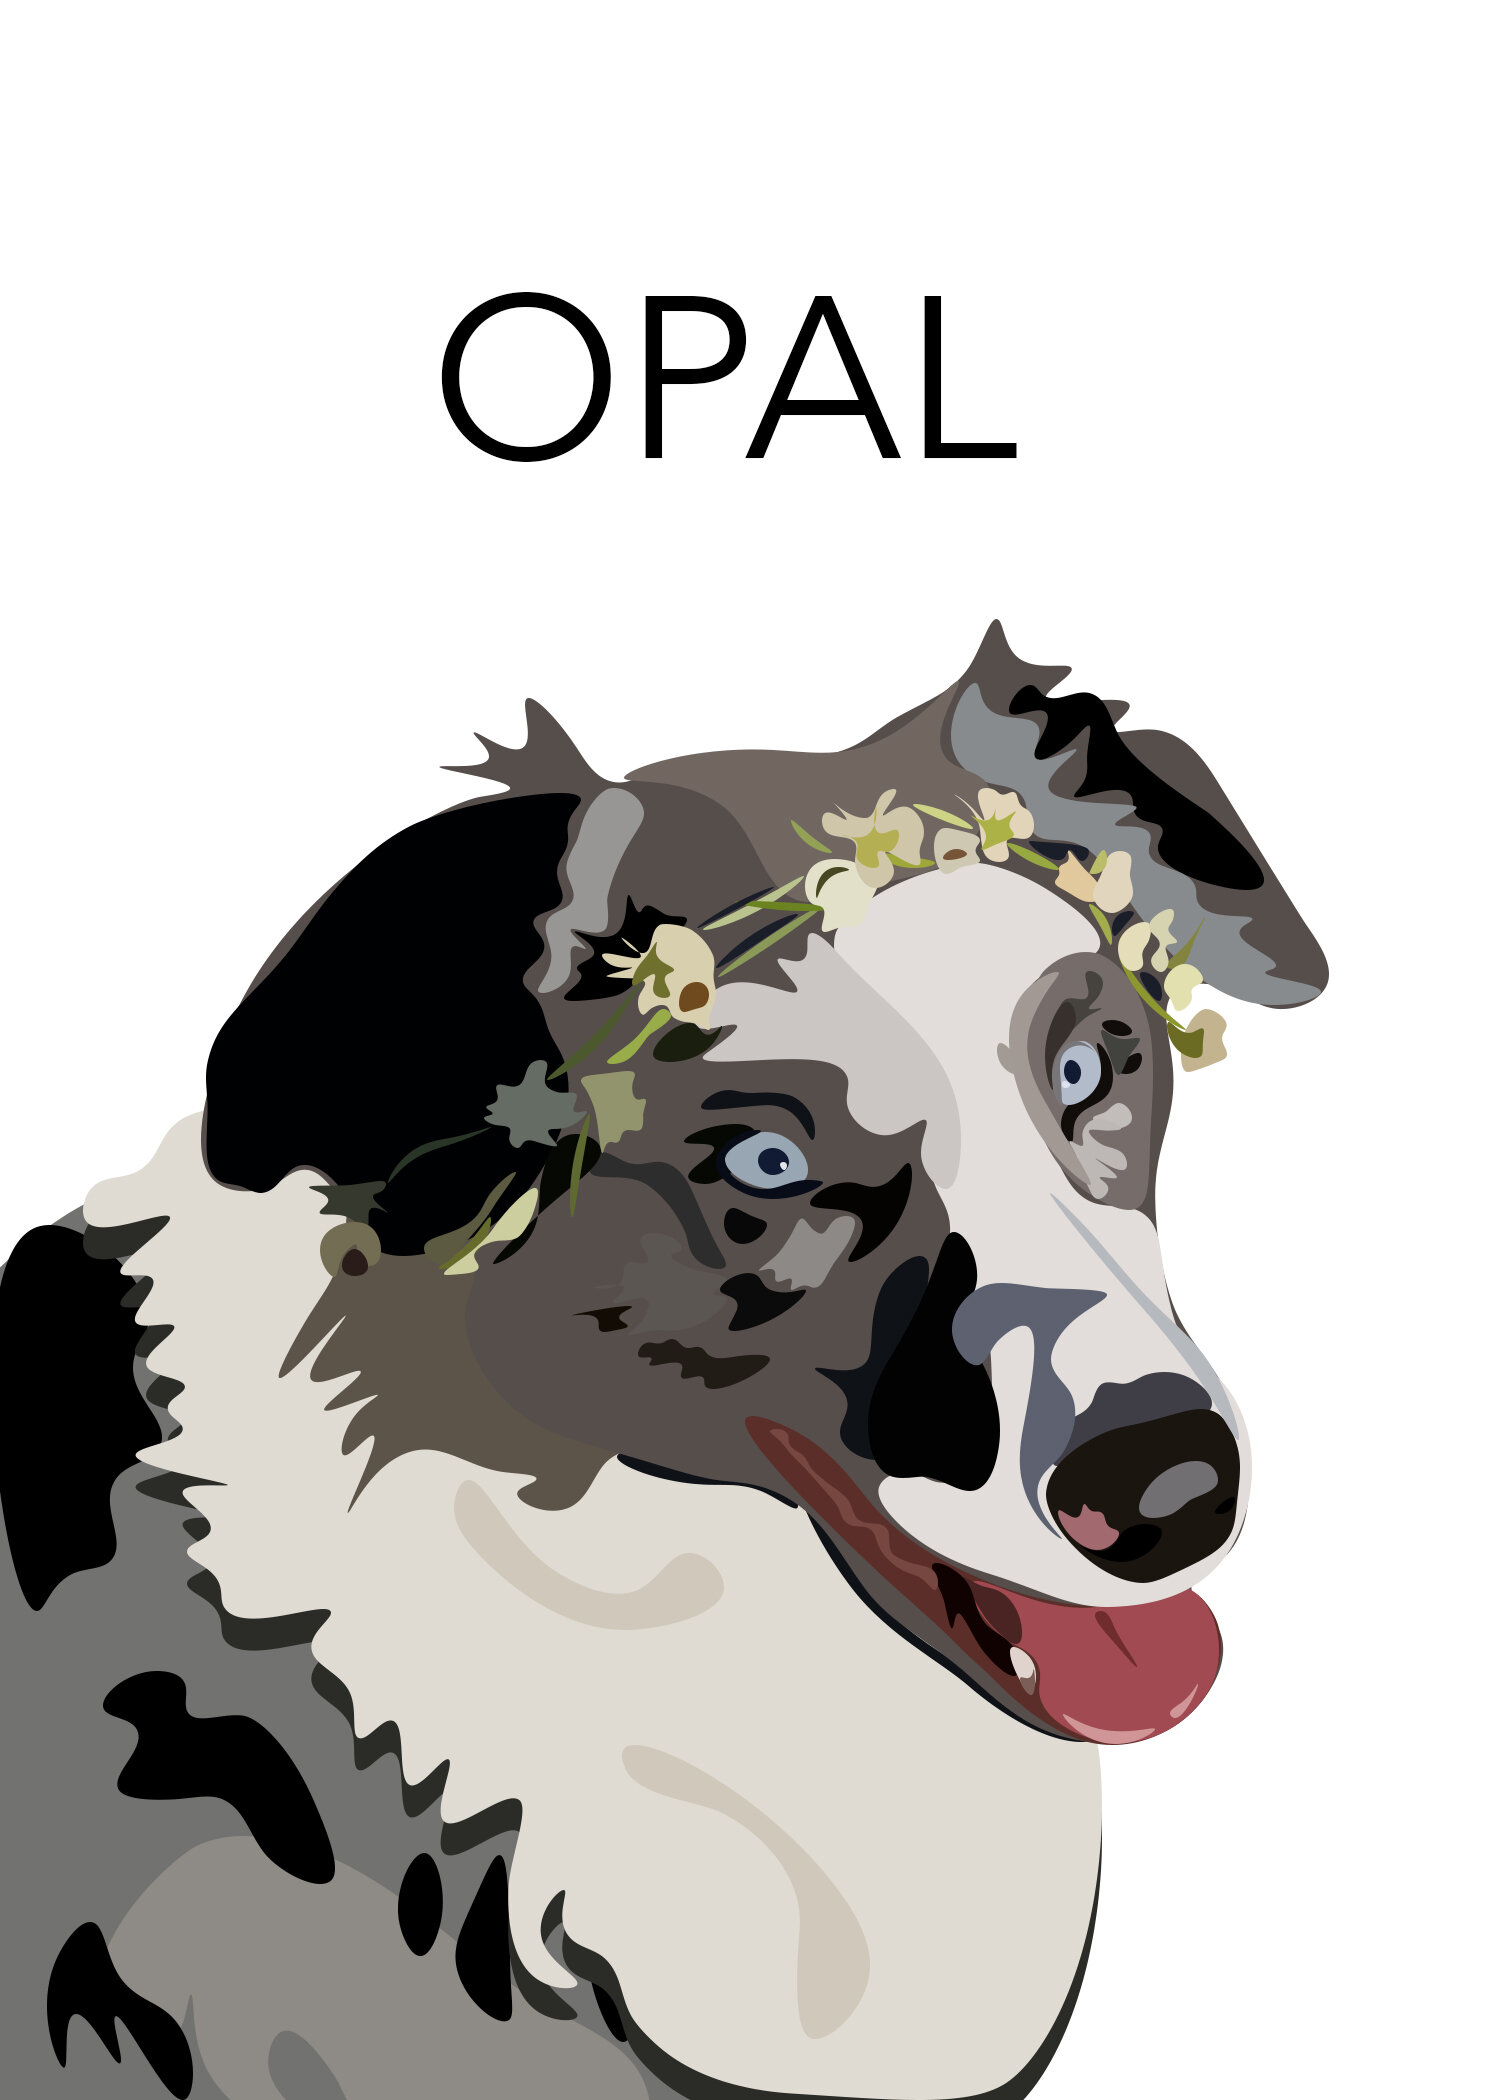 Opal_Text.jpg